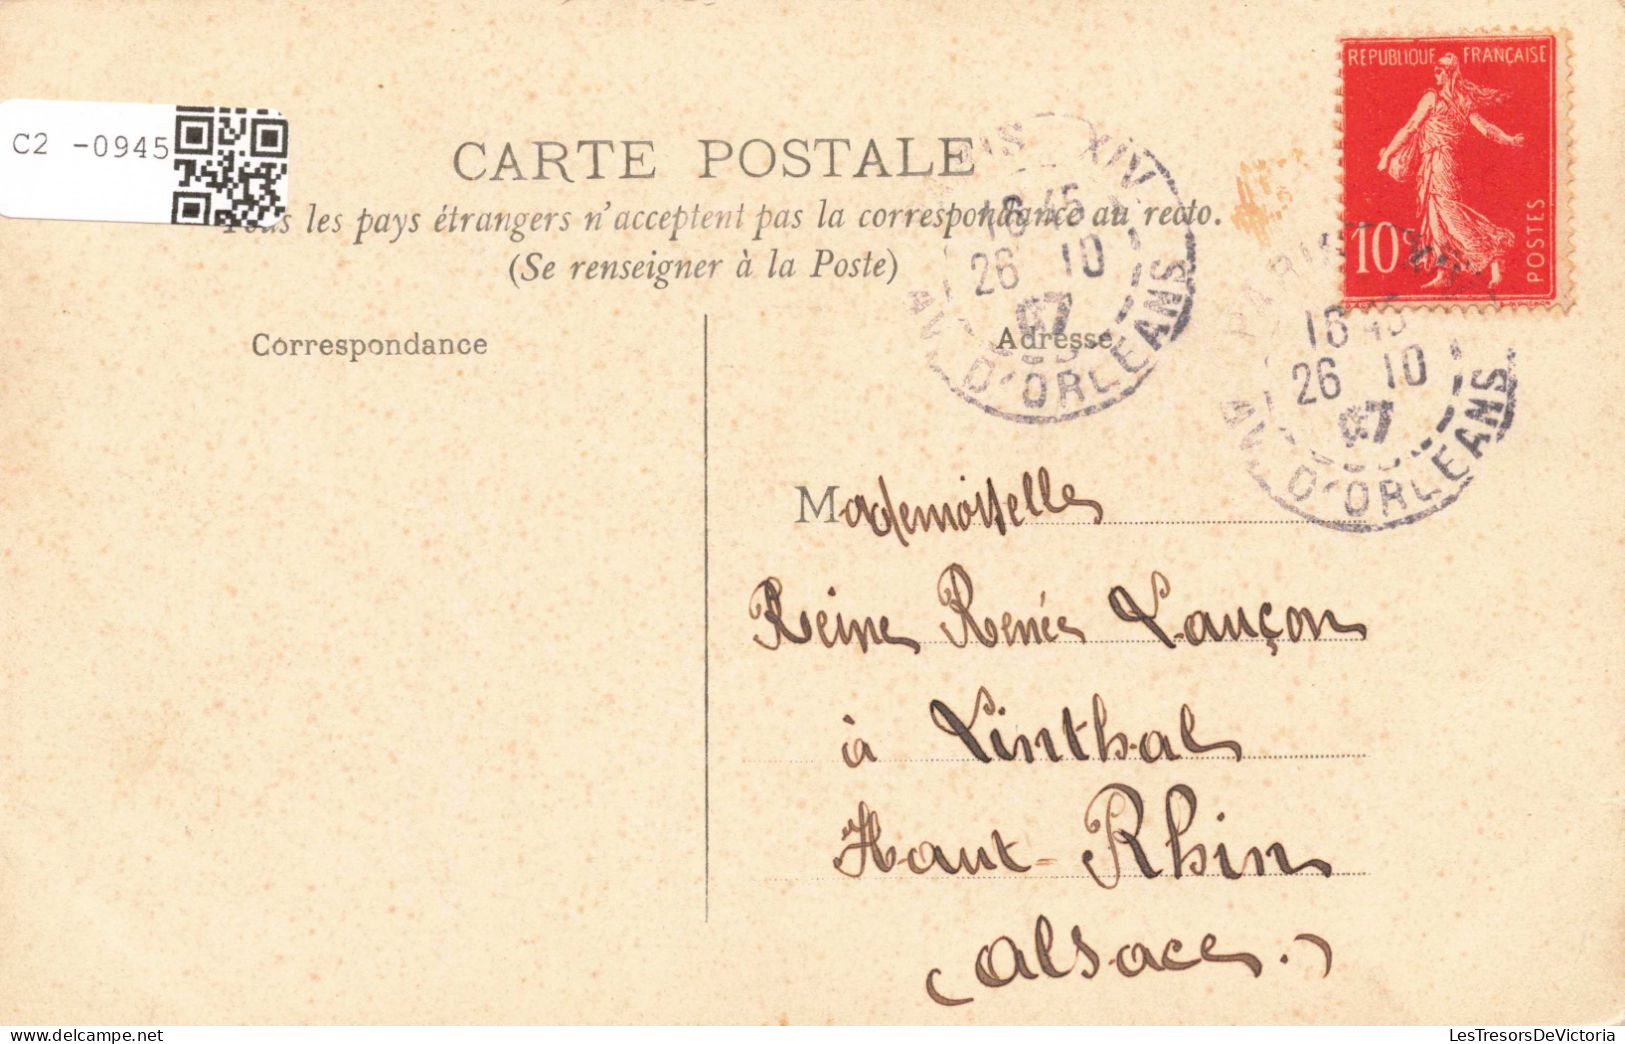 FRANCE - 75 - Paris - Palais De Justice Et Conciergerie - Carte Postale Ancienne - Other Monuments